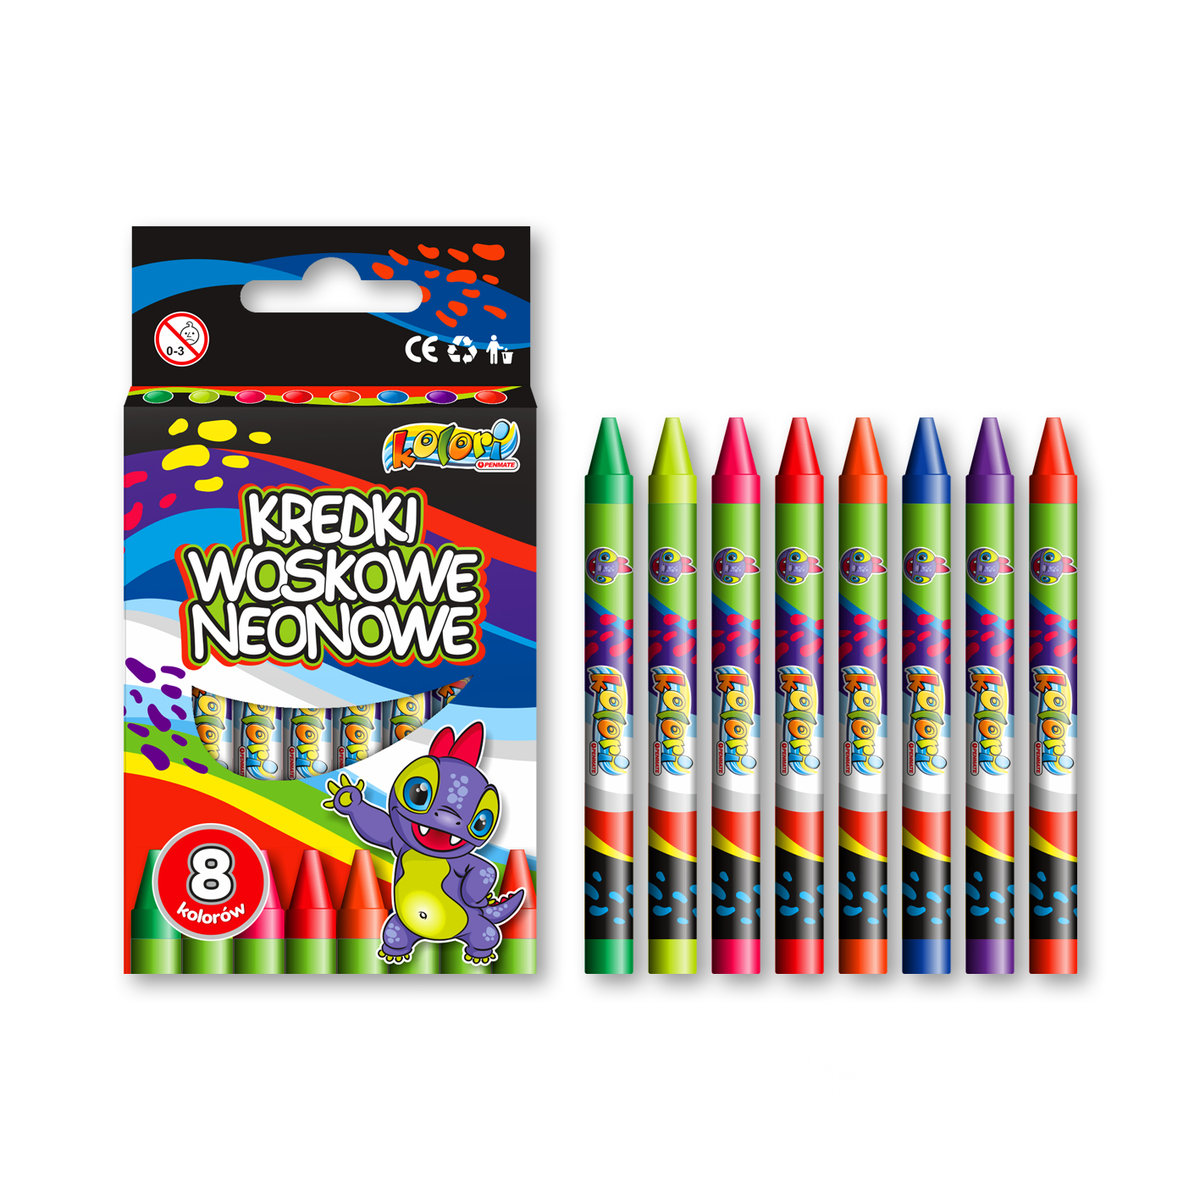 Zdjęcia - Ołówek Dino Penmate, Kredki woskowe, neonowe,  Kolori Premium, 8 kolorów 